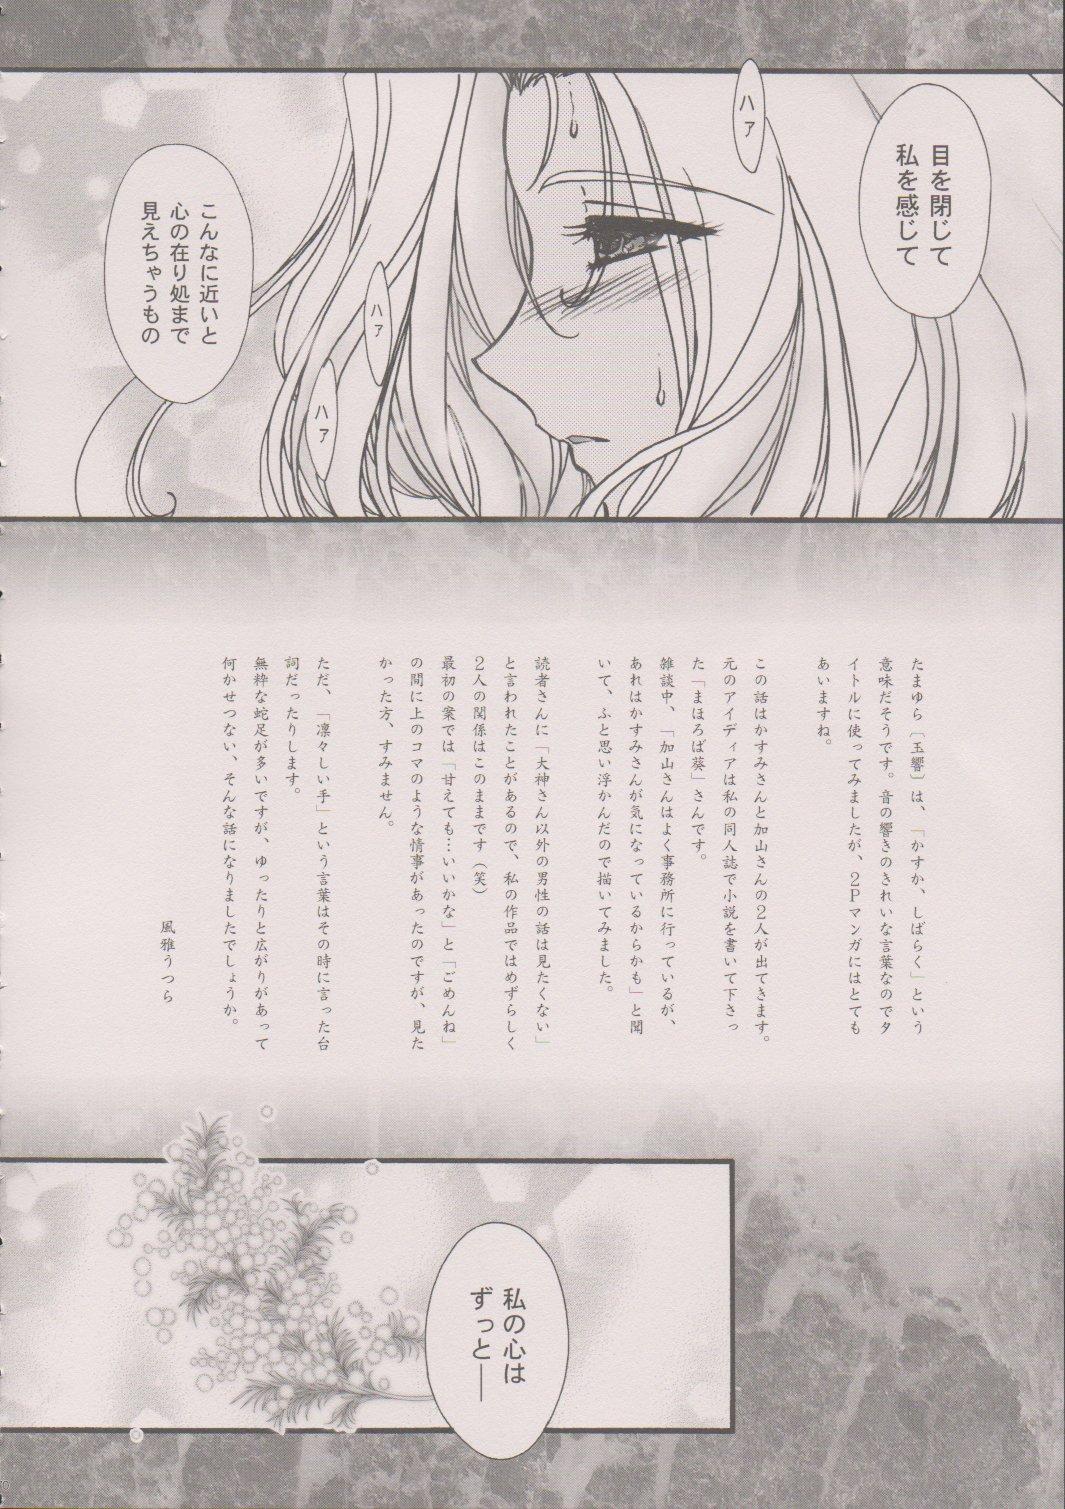 [TSK (Fuuga Utsura)] Maihime ~Karen~ 6 Teito Yori. (Sakura Wars) 68